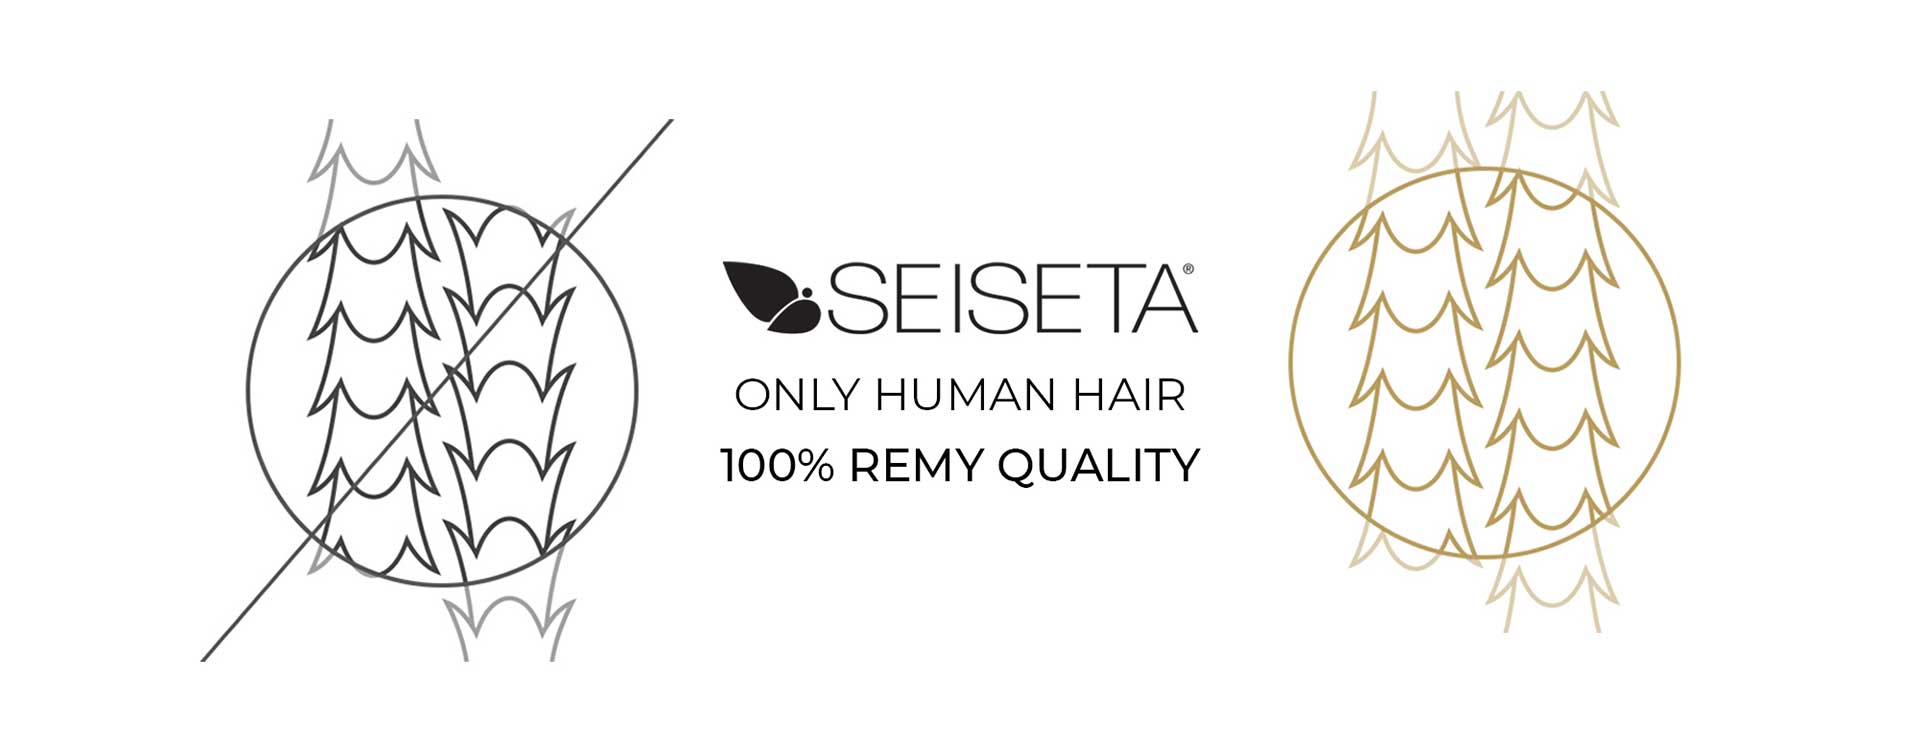 SeiSeta 100% capelli remy